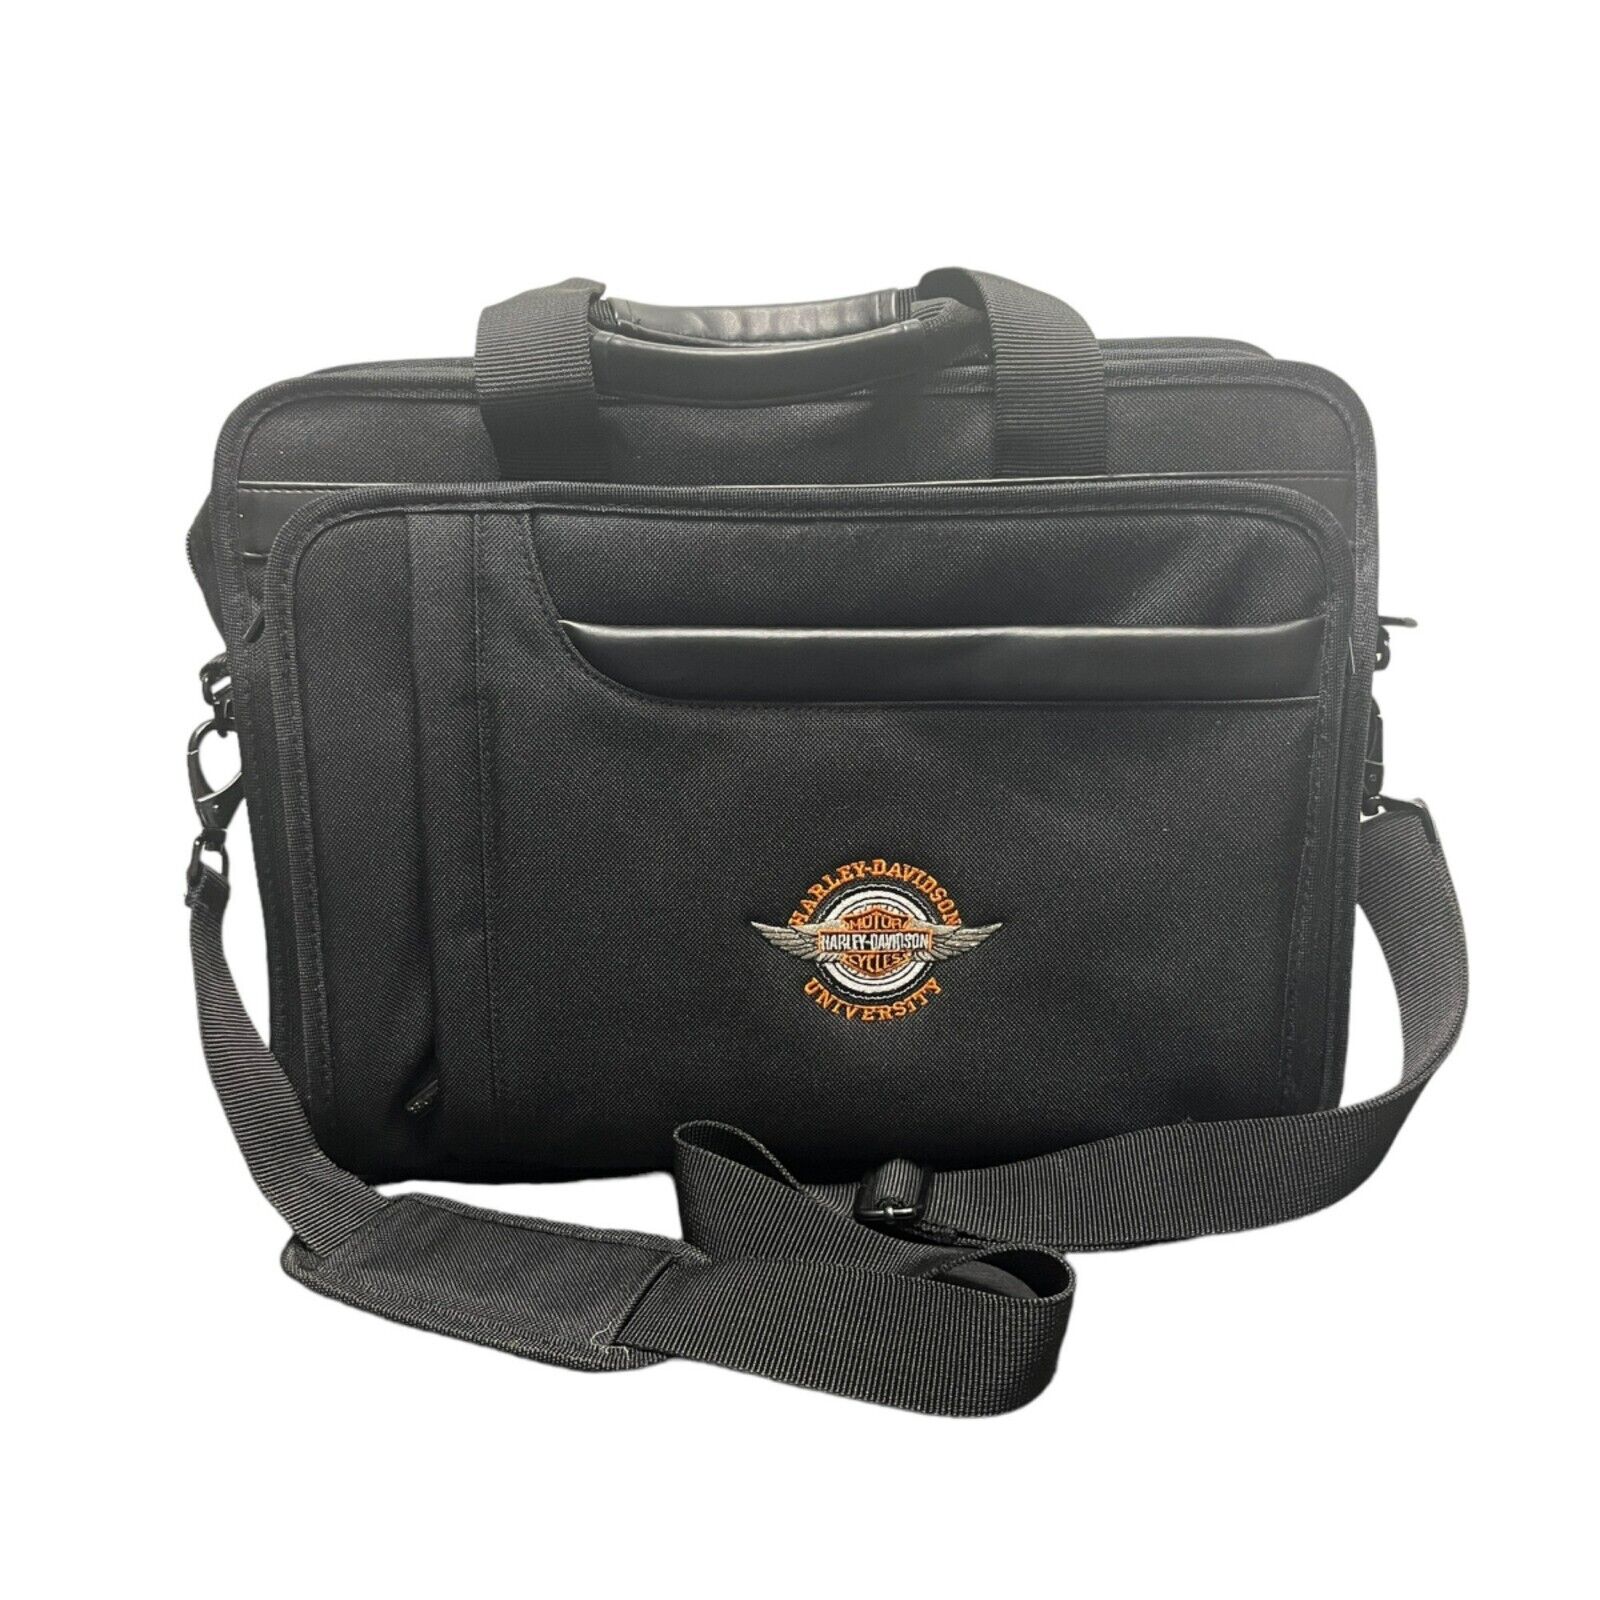 Harley Davidson University Laptop Bag Case Travel Zipper Leeds Black Shoulder